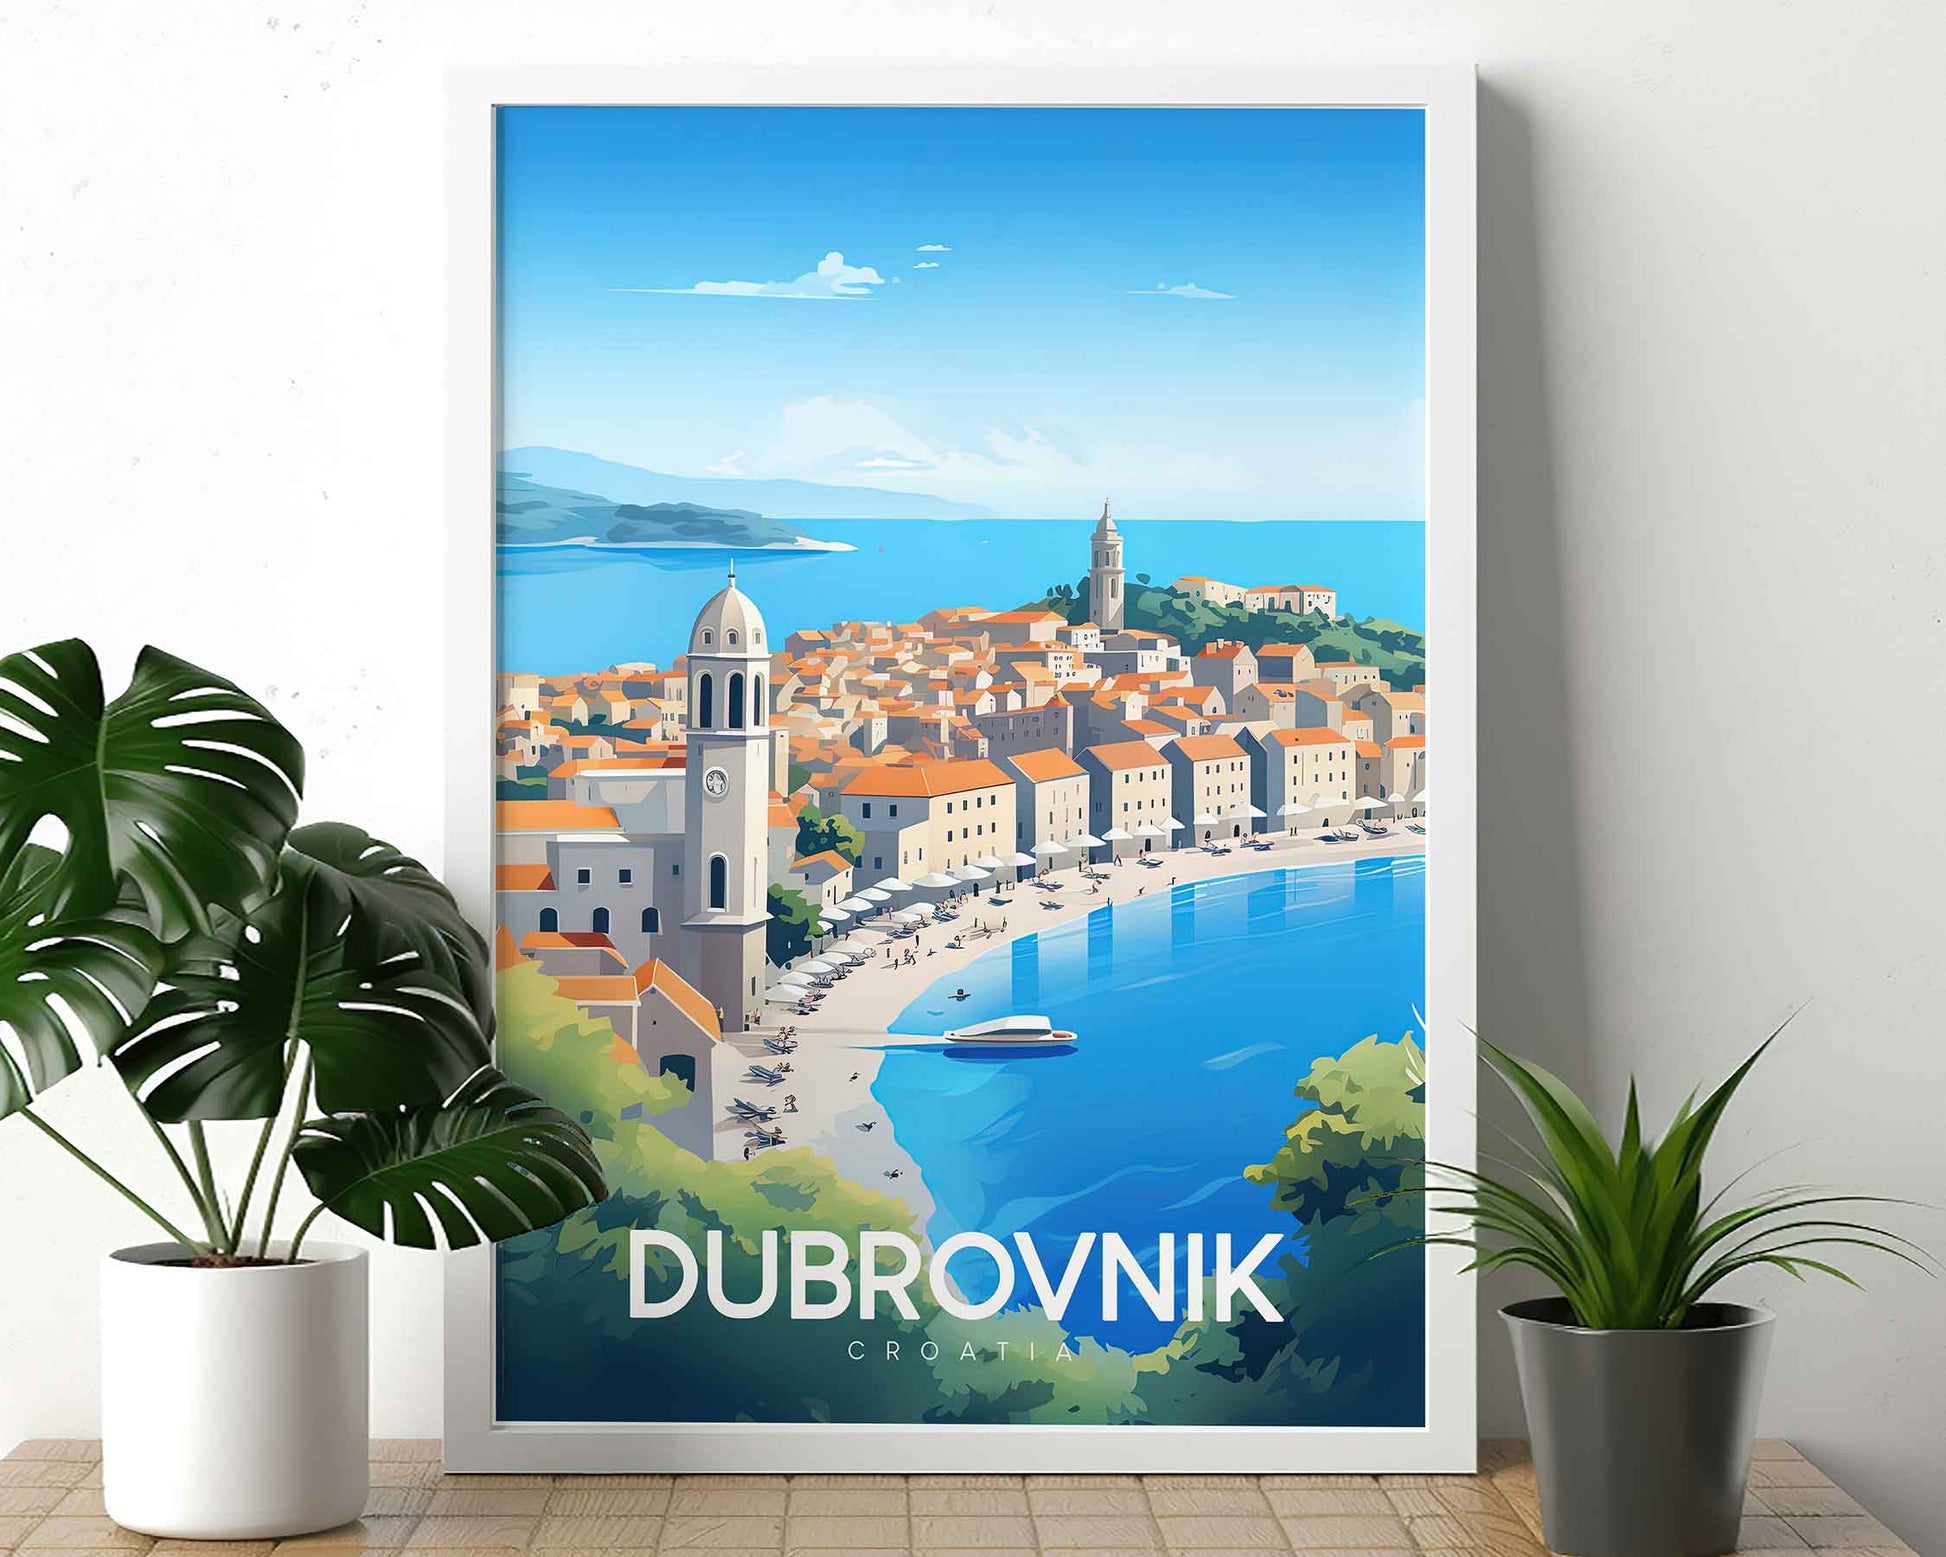 Framed Image of Dubrovnik Croatia Travel Poster Wall Art Prints Illustration